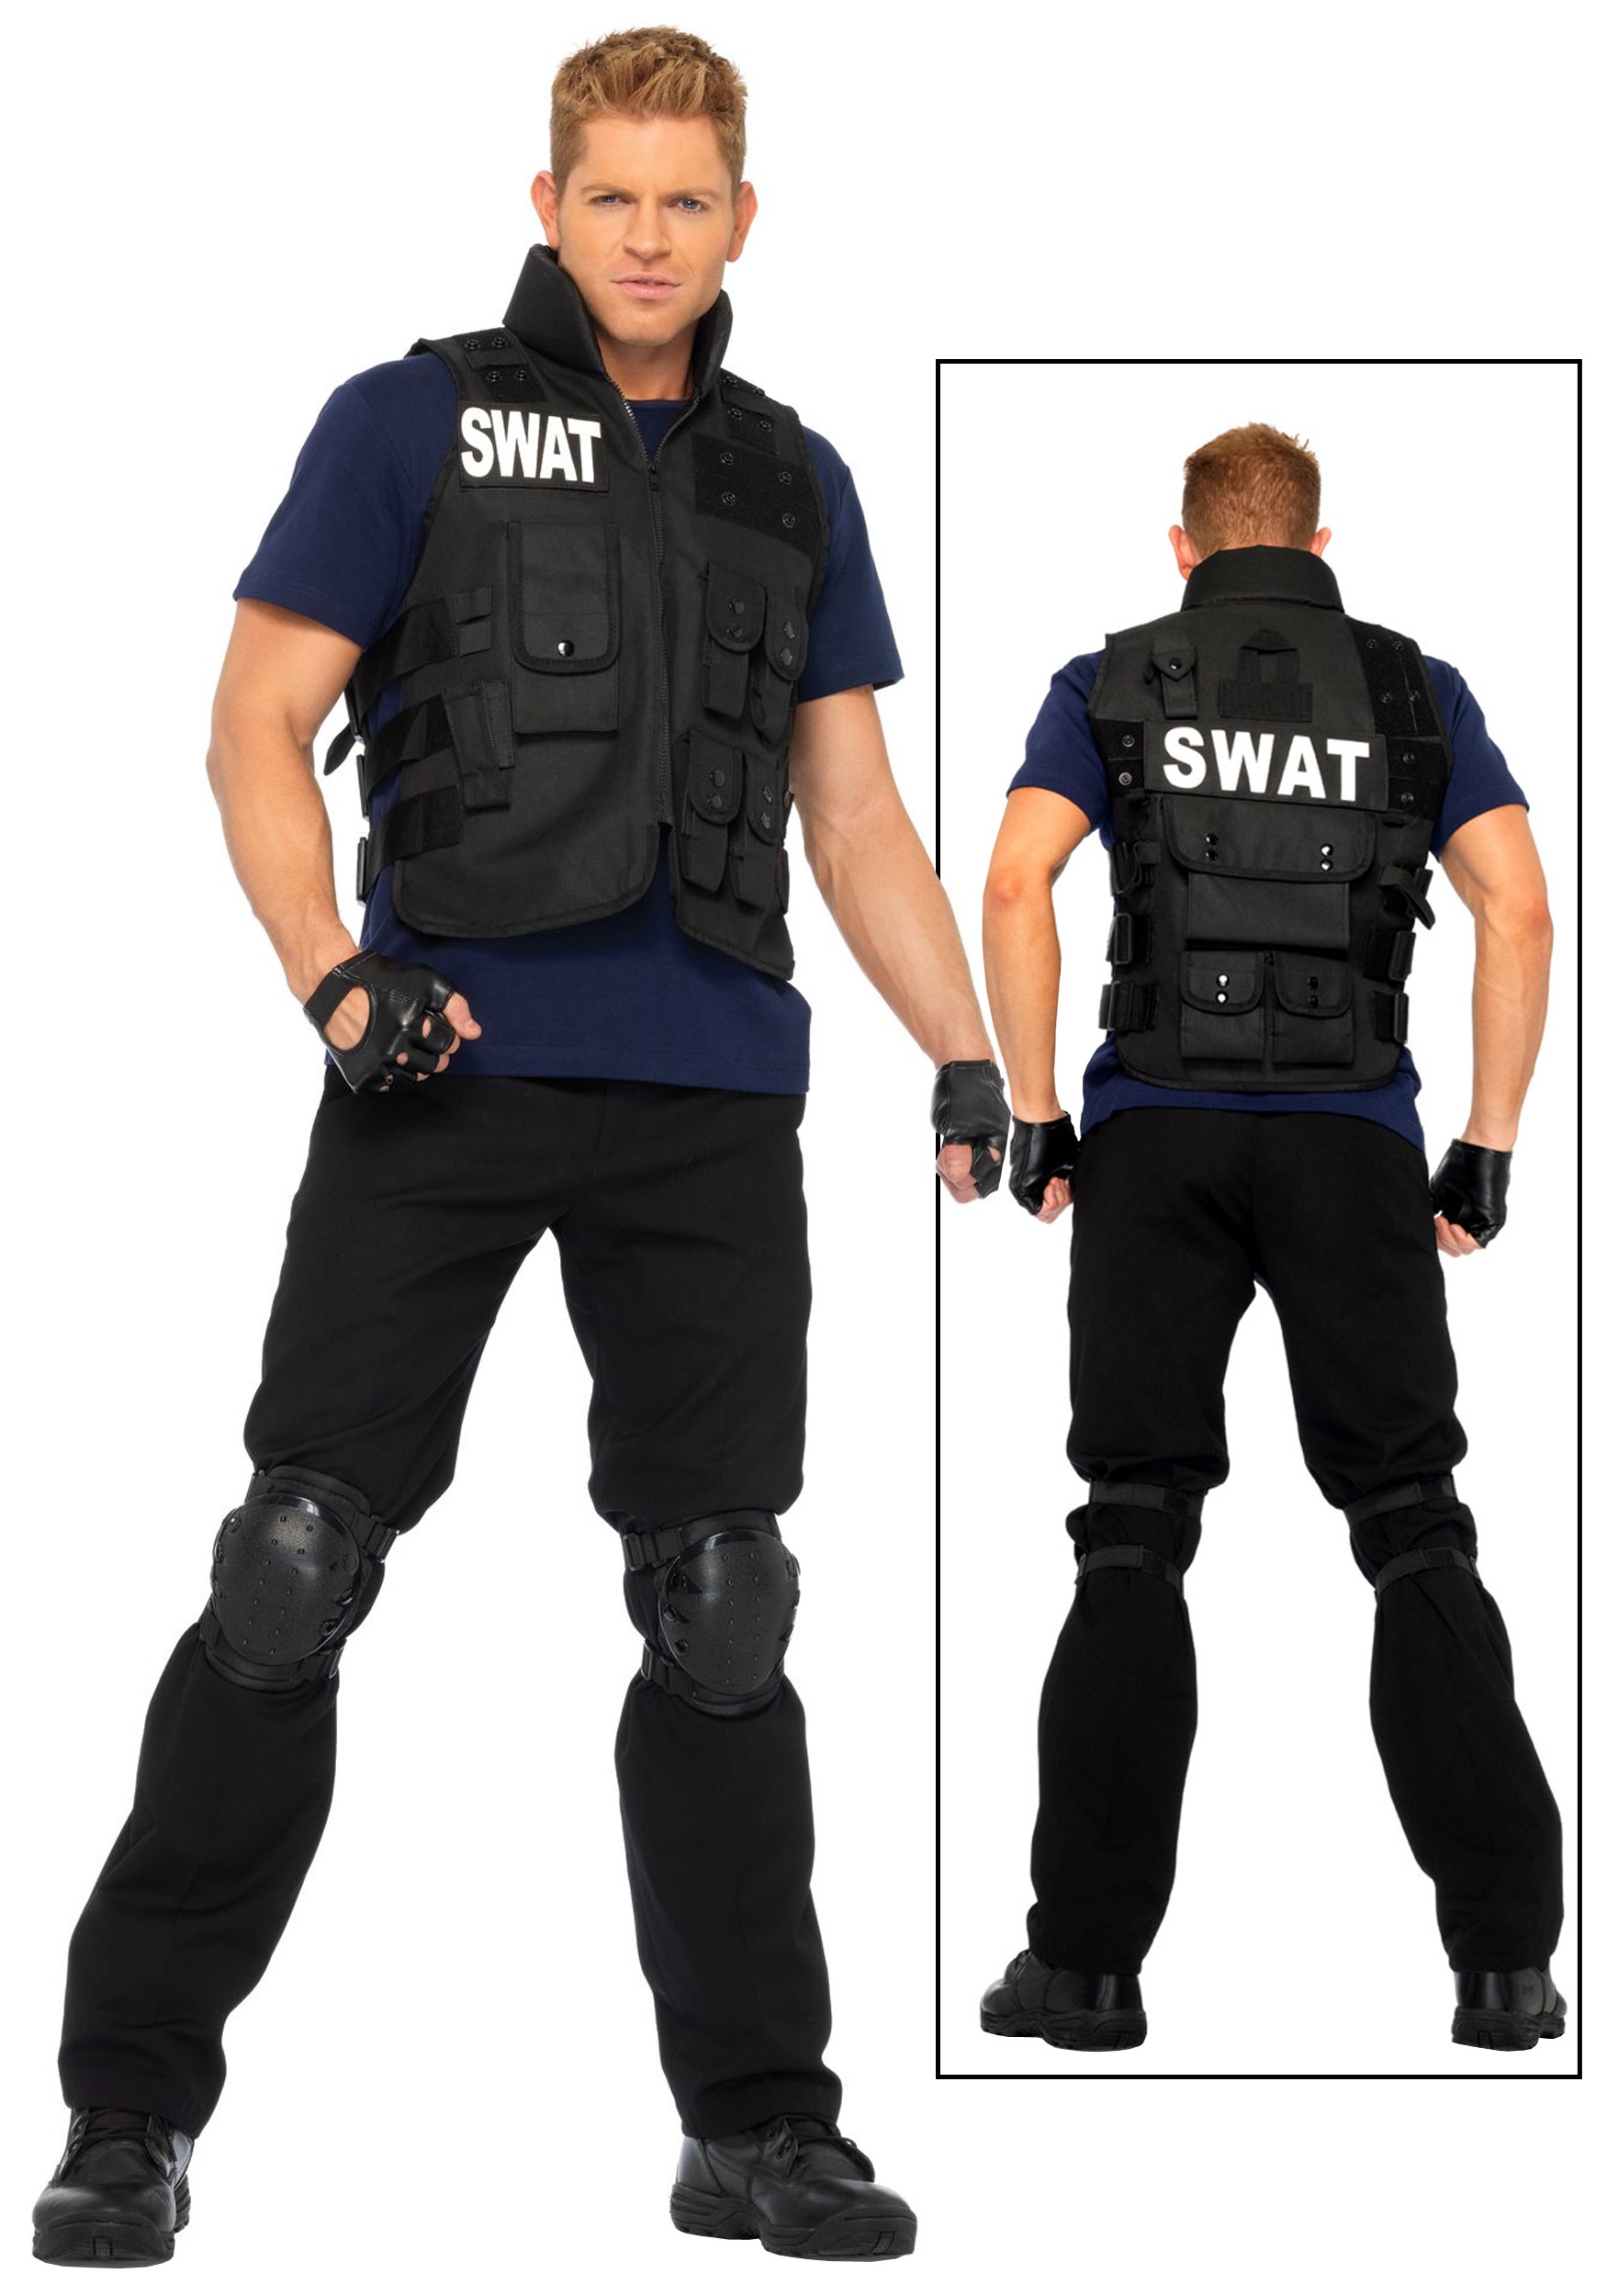 Swat con máscara facial de uniforme negro y chaleco antibalas